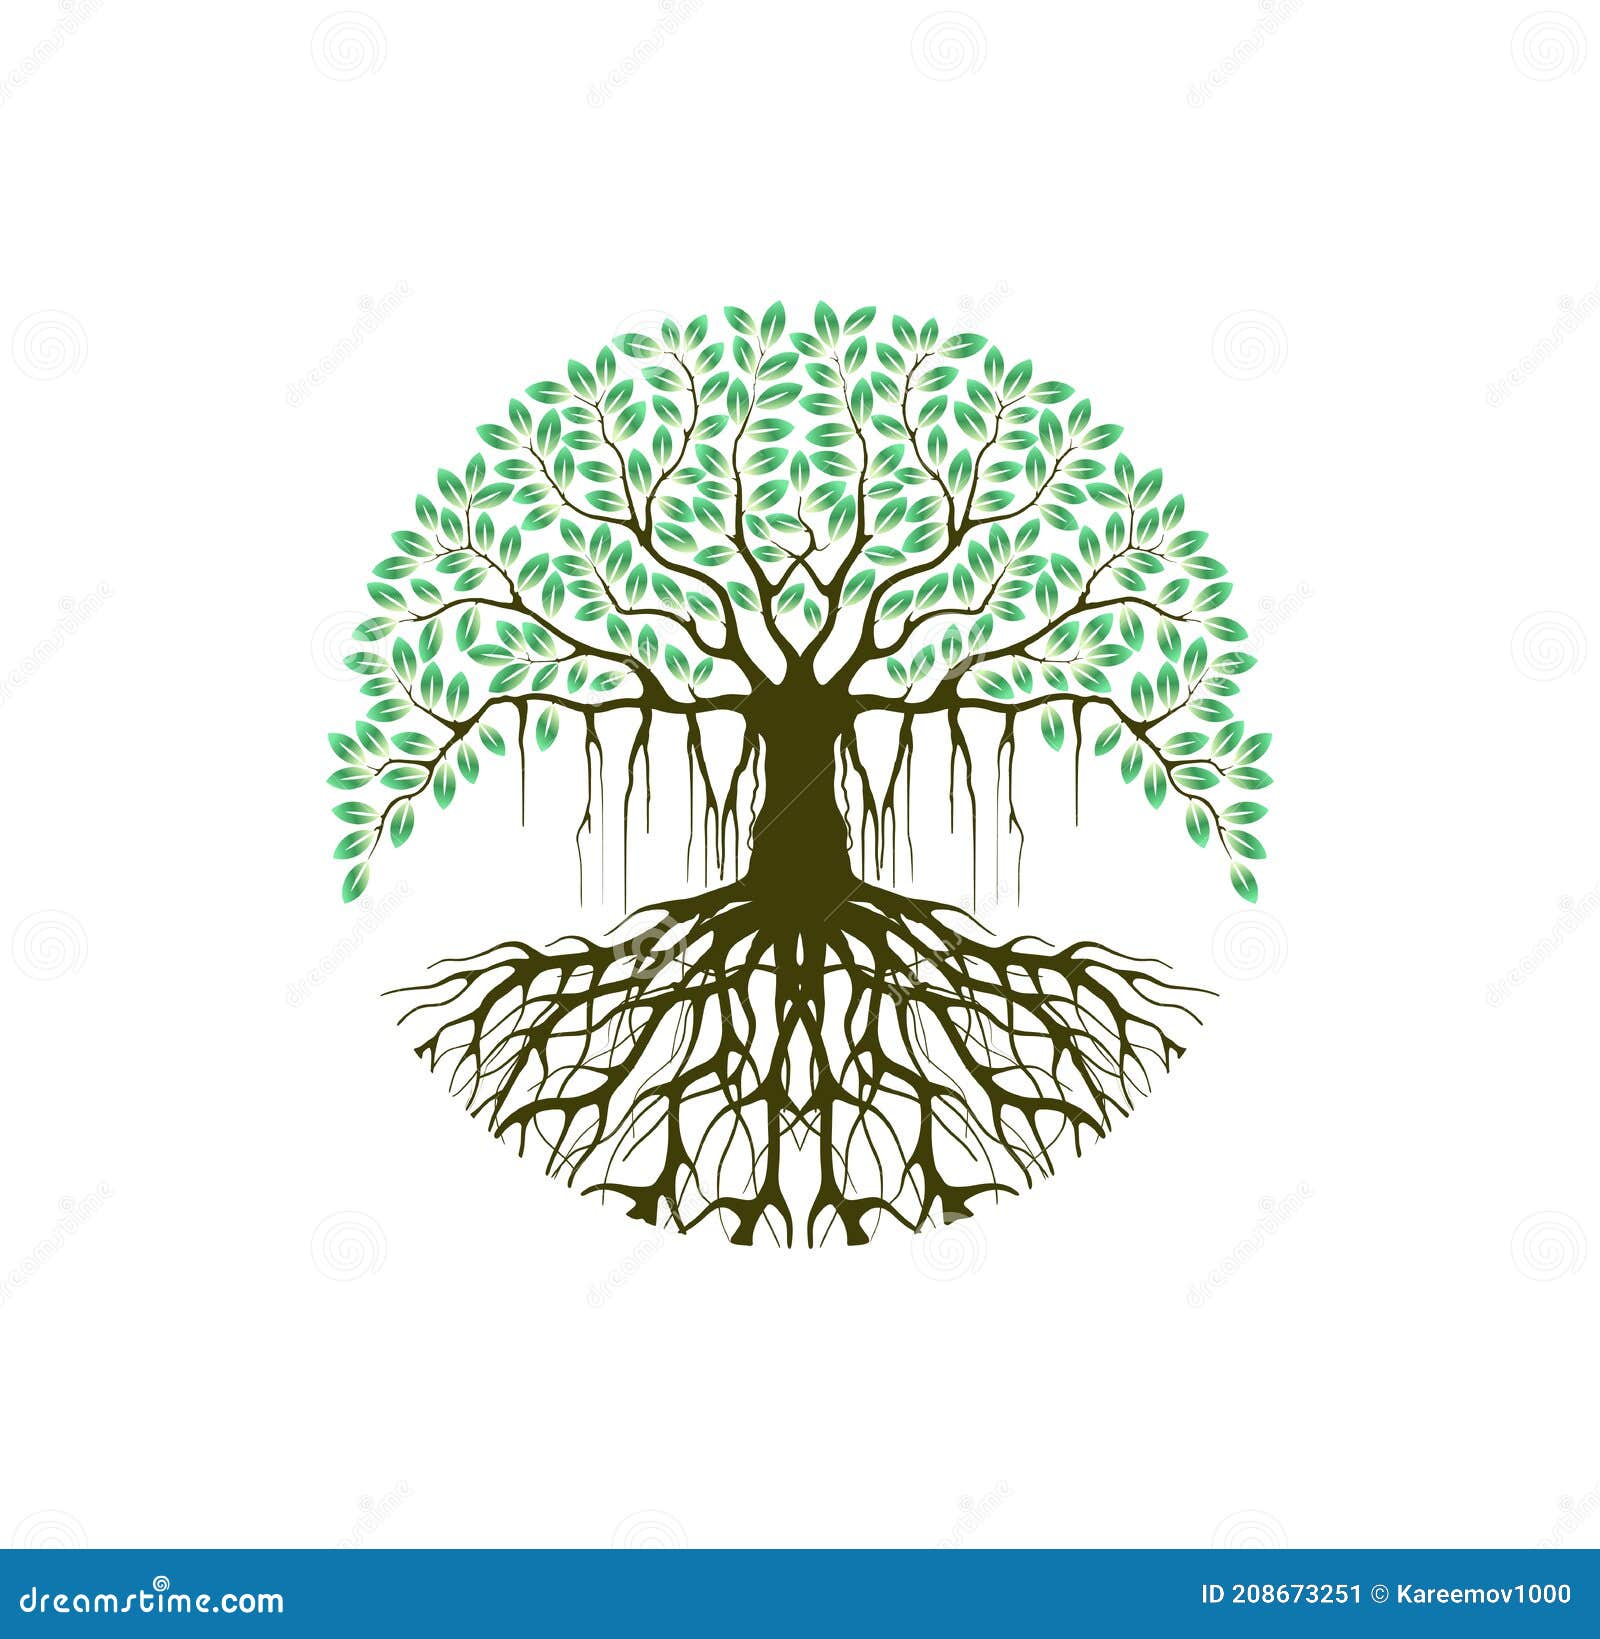 printable banyan tree image  